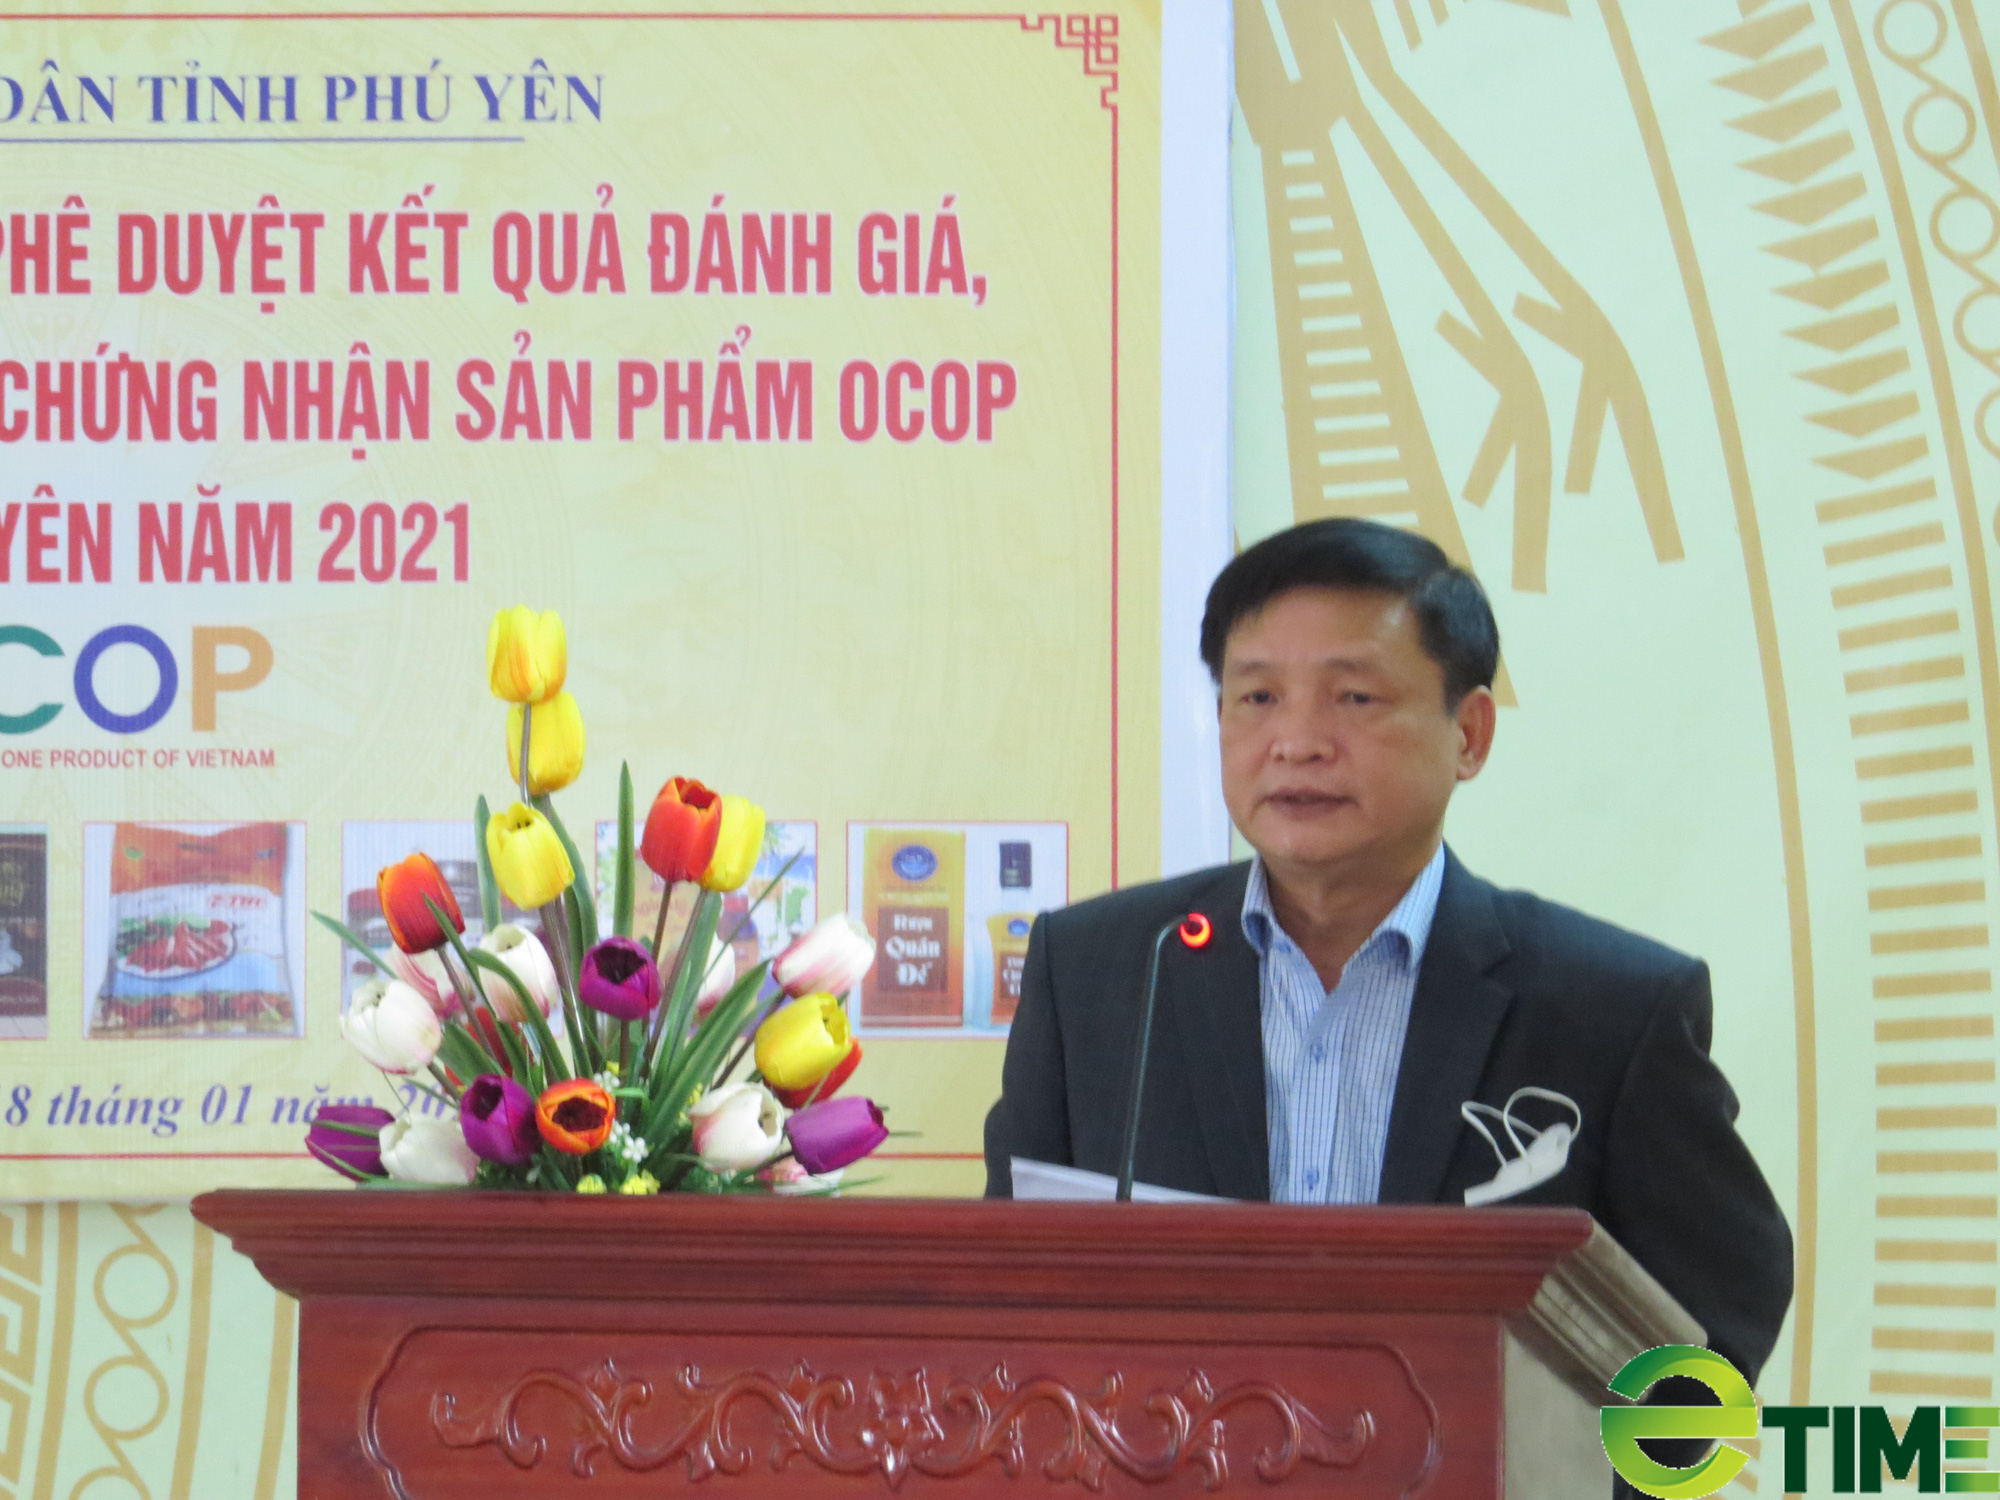 Trao chứng nhận 9 sản phẩm OCOP tỉnh Phú Yên năm 2021 - Ảnh 2.